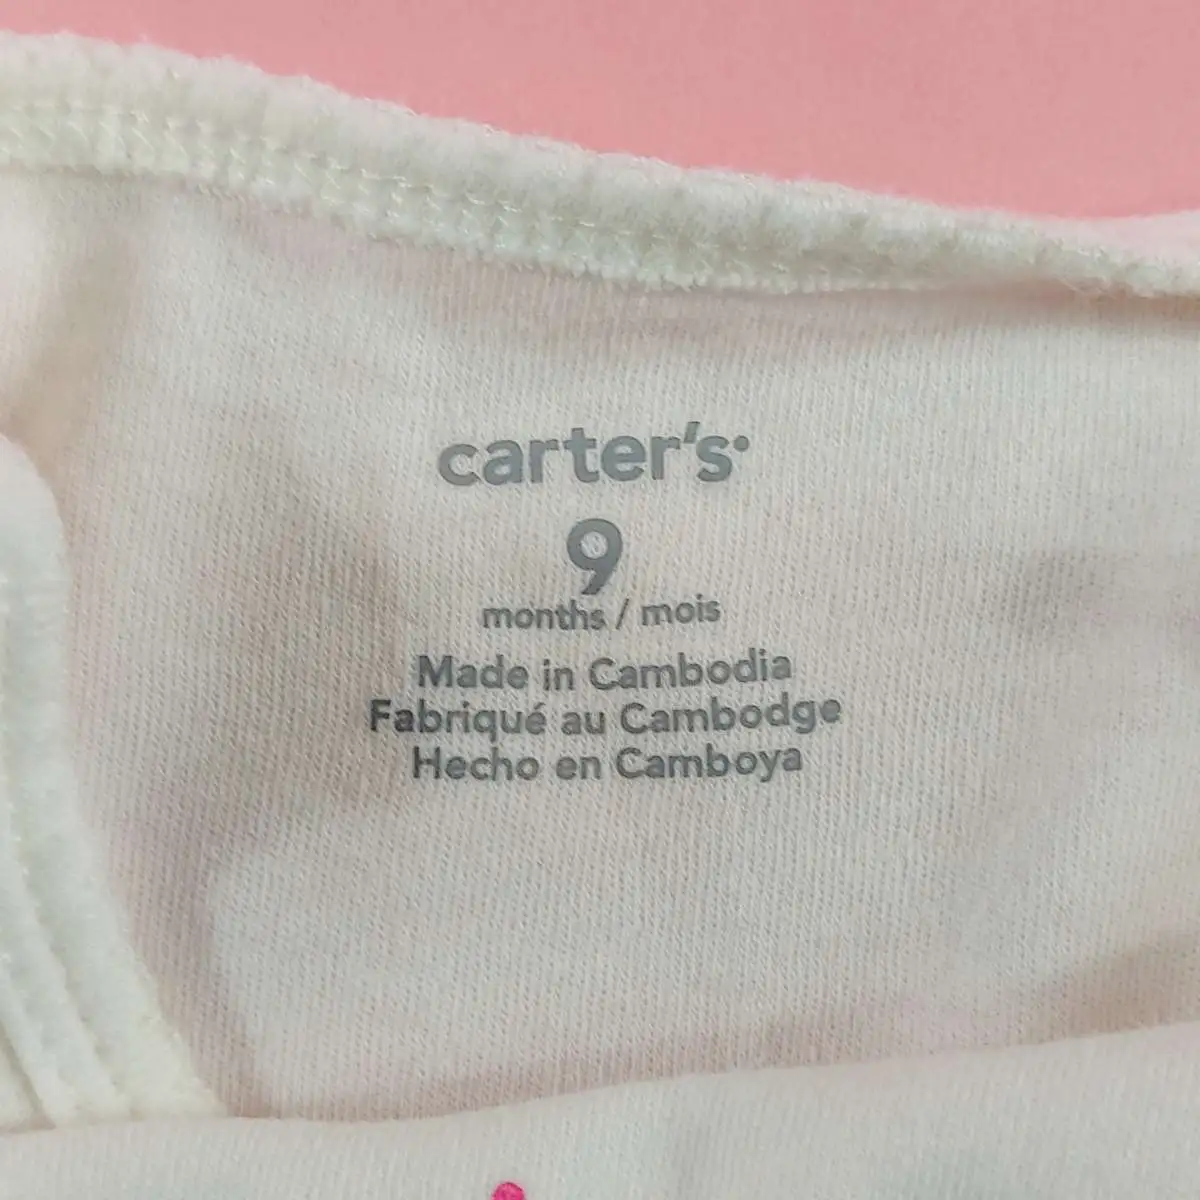 carter's ชุดหมีแขนยาวขาเว้าสีขาว 9 m